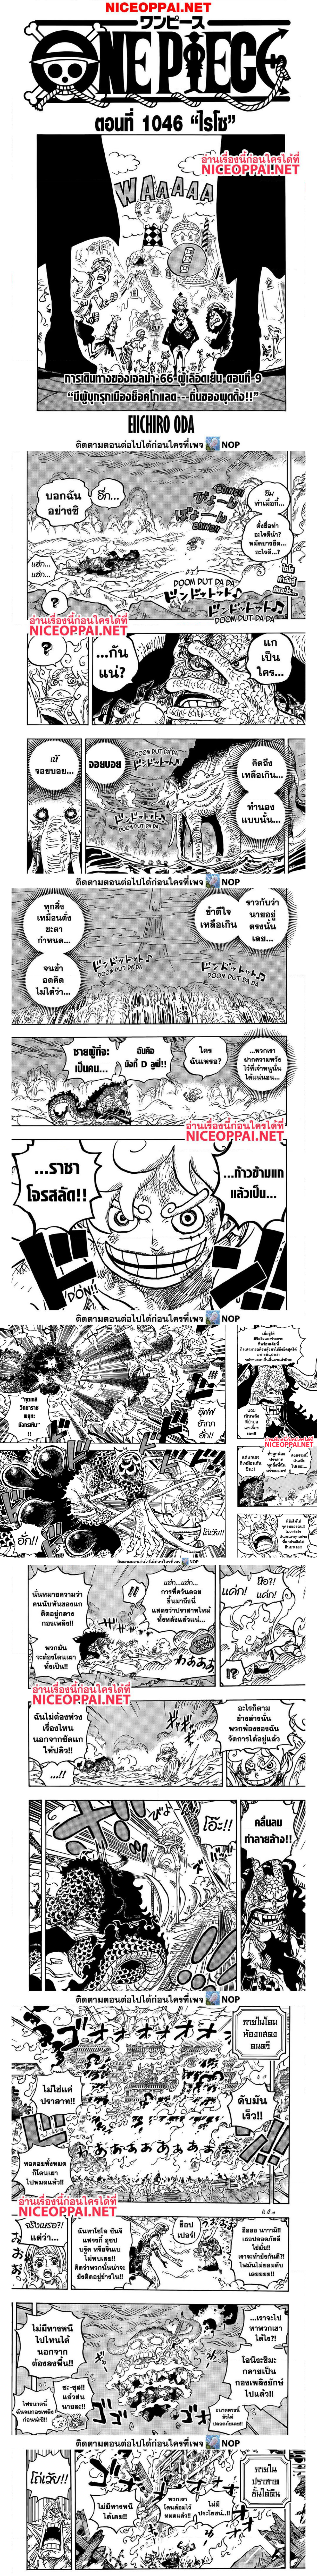 One Piece 1046 (1)